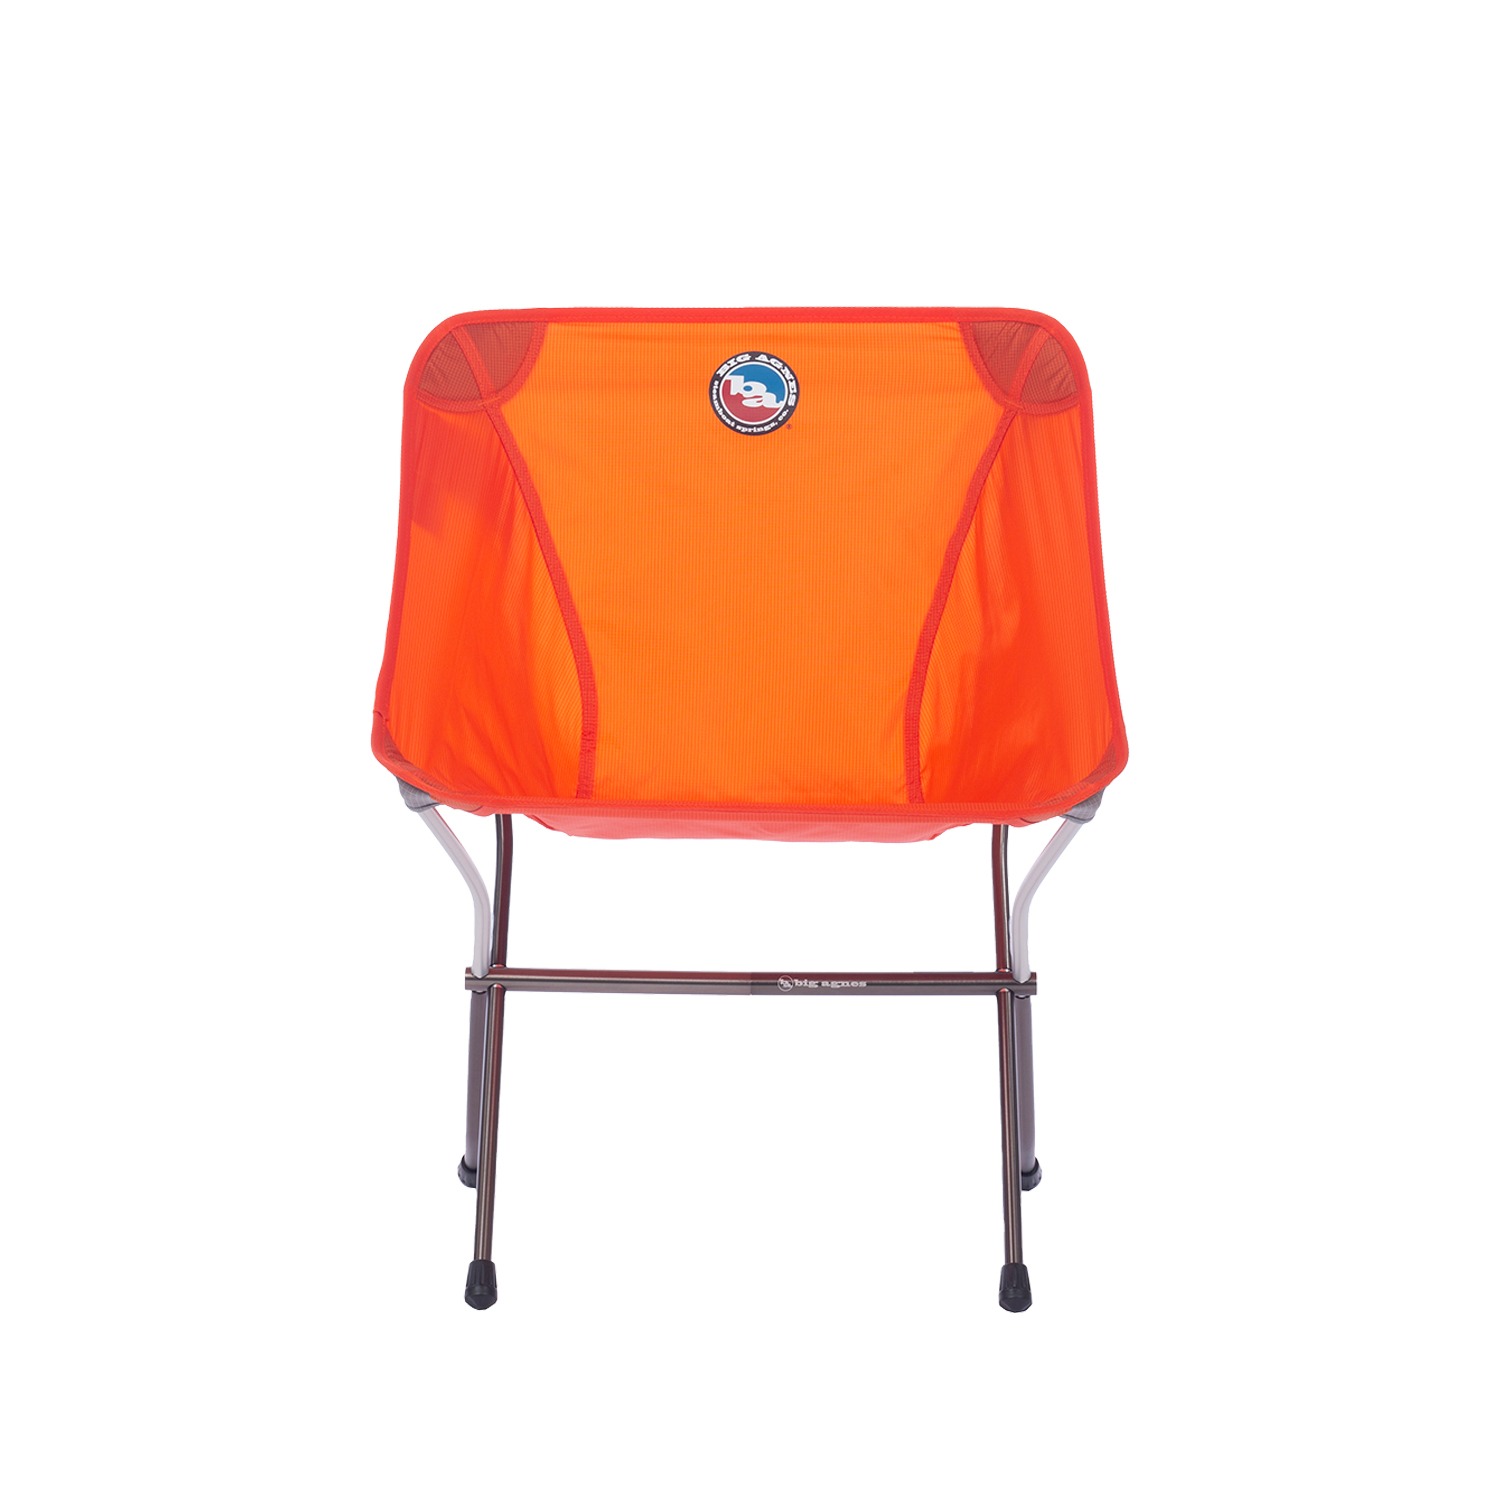 Skyline UL Chair - Orange